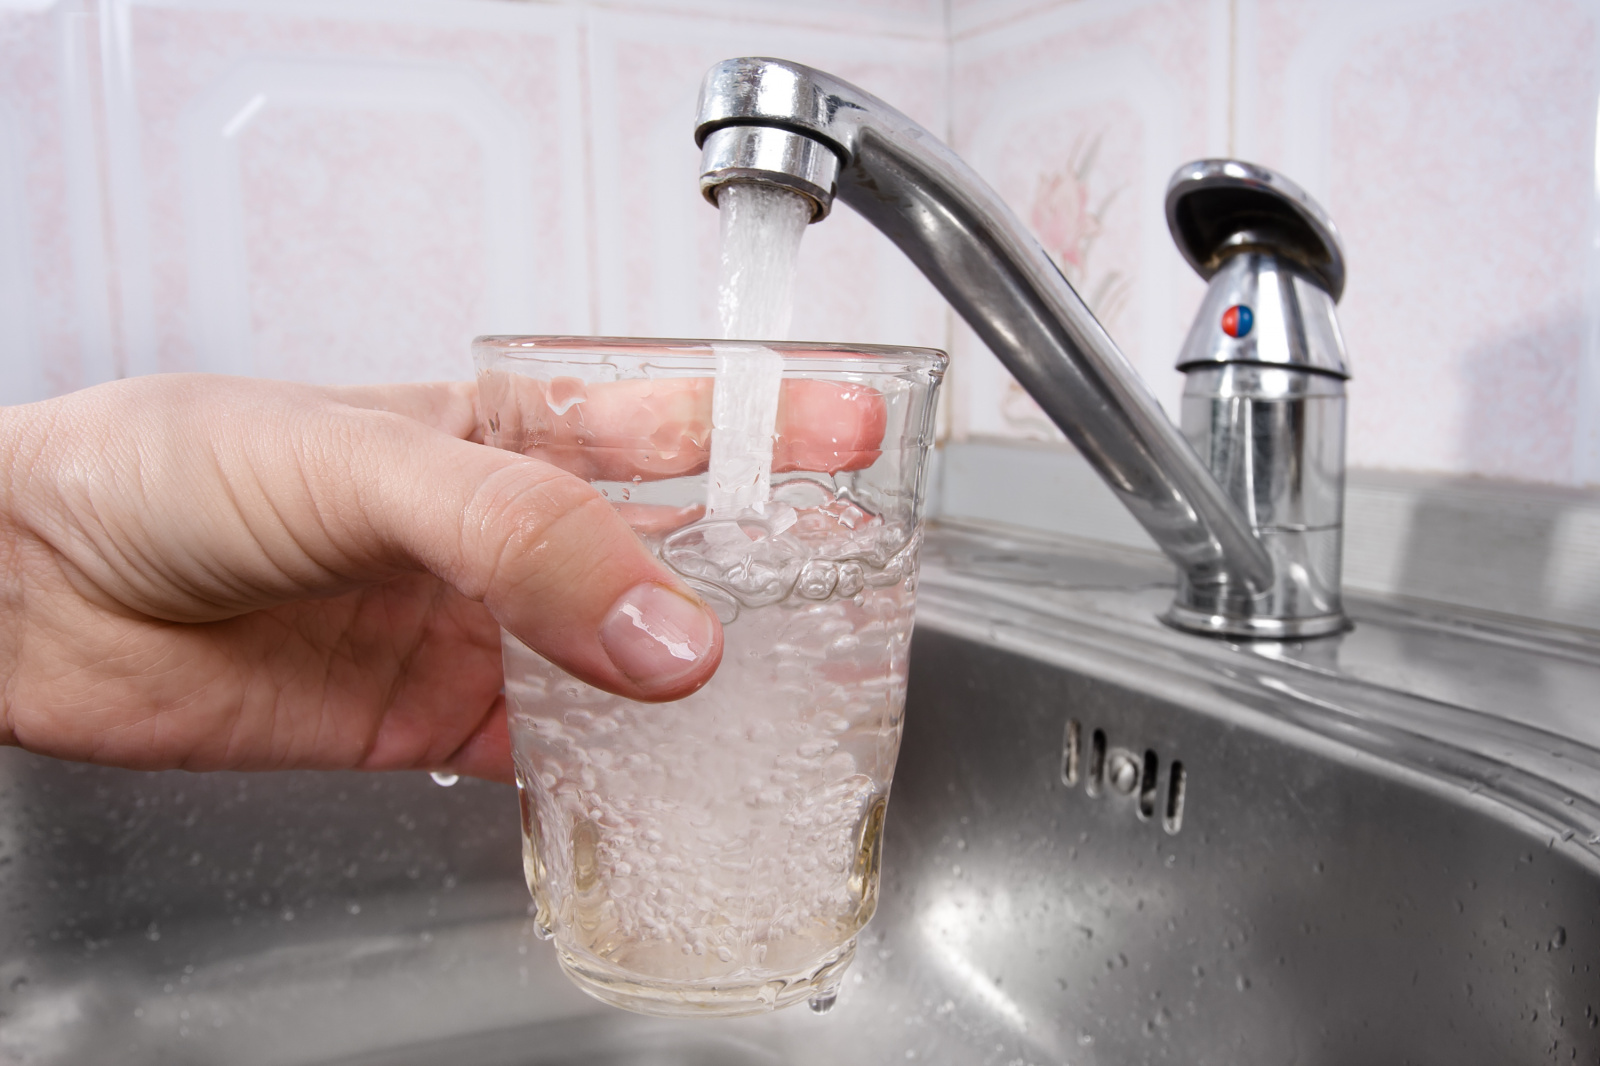 Жителям Оболони в ночь с 28 на 29 марта нельзя будет пользоваться водой из крана